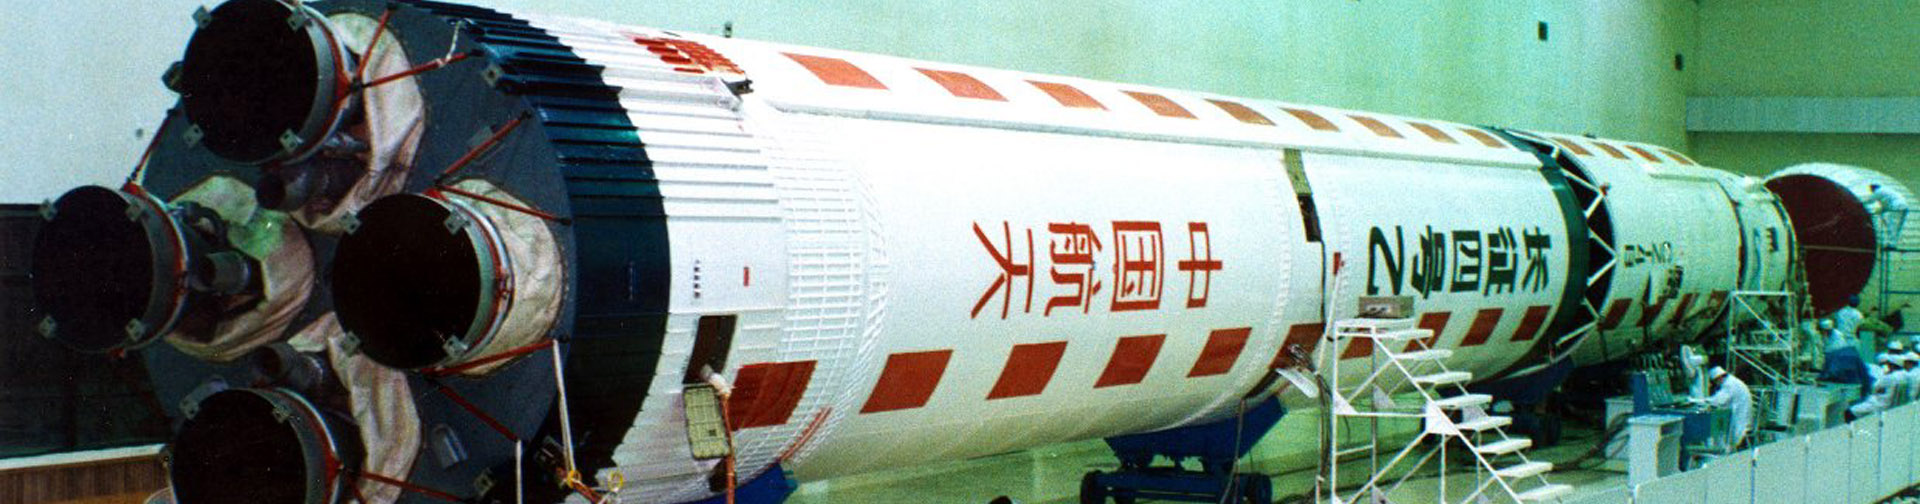 Fusée Chang-Zheng 4B / Long-March 4B